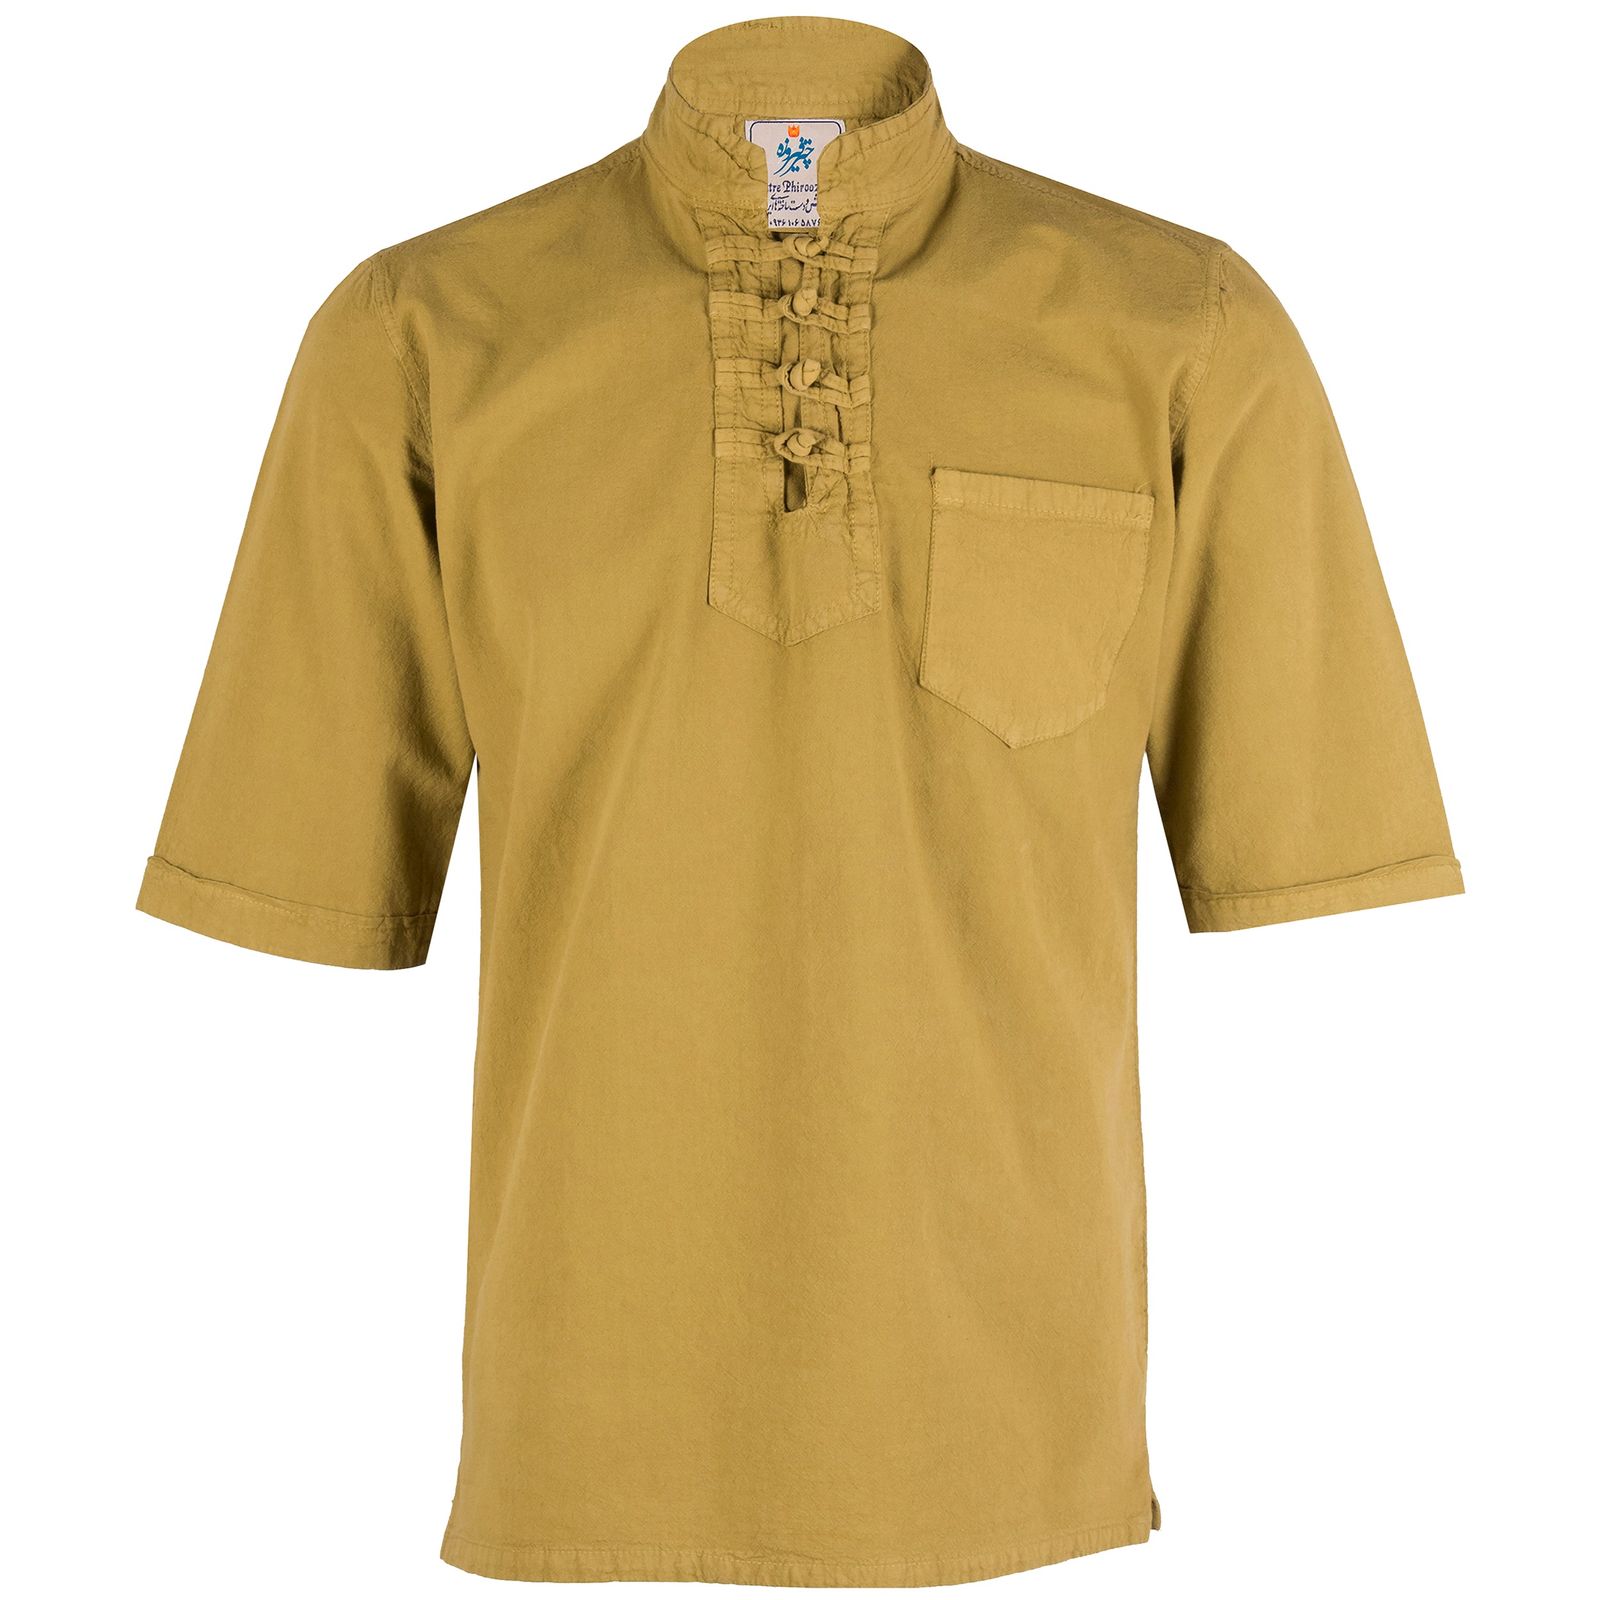 پیراهن مردانه چترفیروزه مدل چهارگره آستین کوتاه کد 8 -  - 1